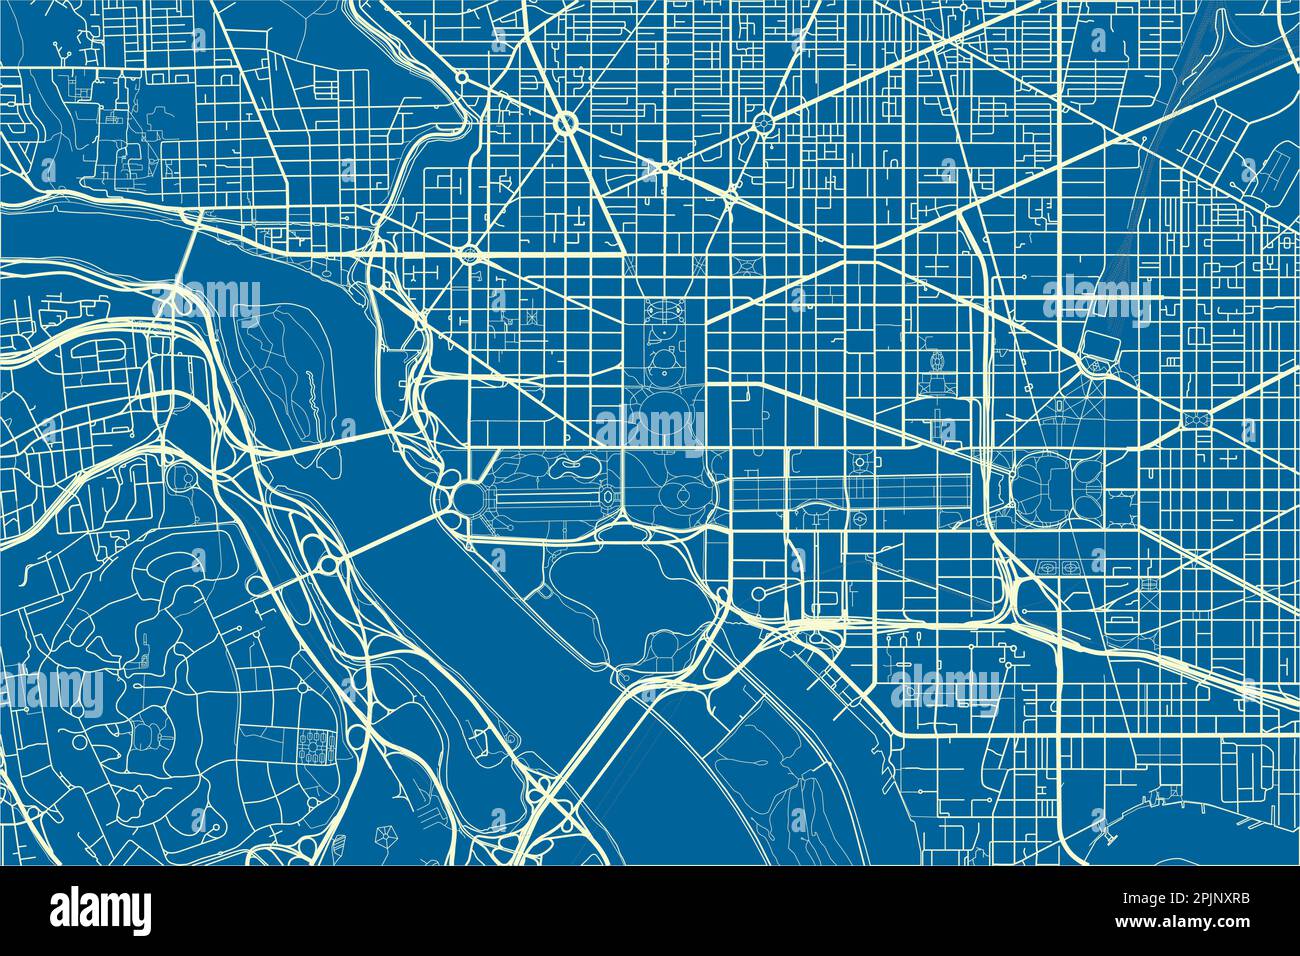 Blau-weißer Vektor-Stadtplan von Washington, D.C. mit gut organisierten getrennten Schichten. Stock Vektor